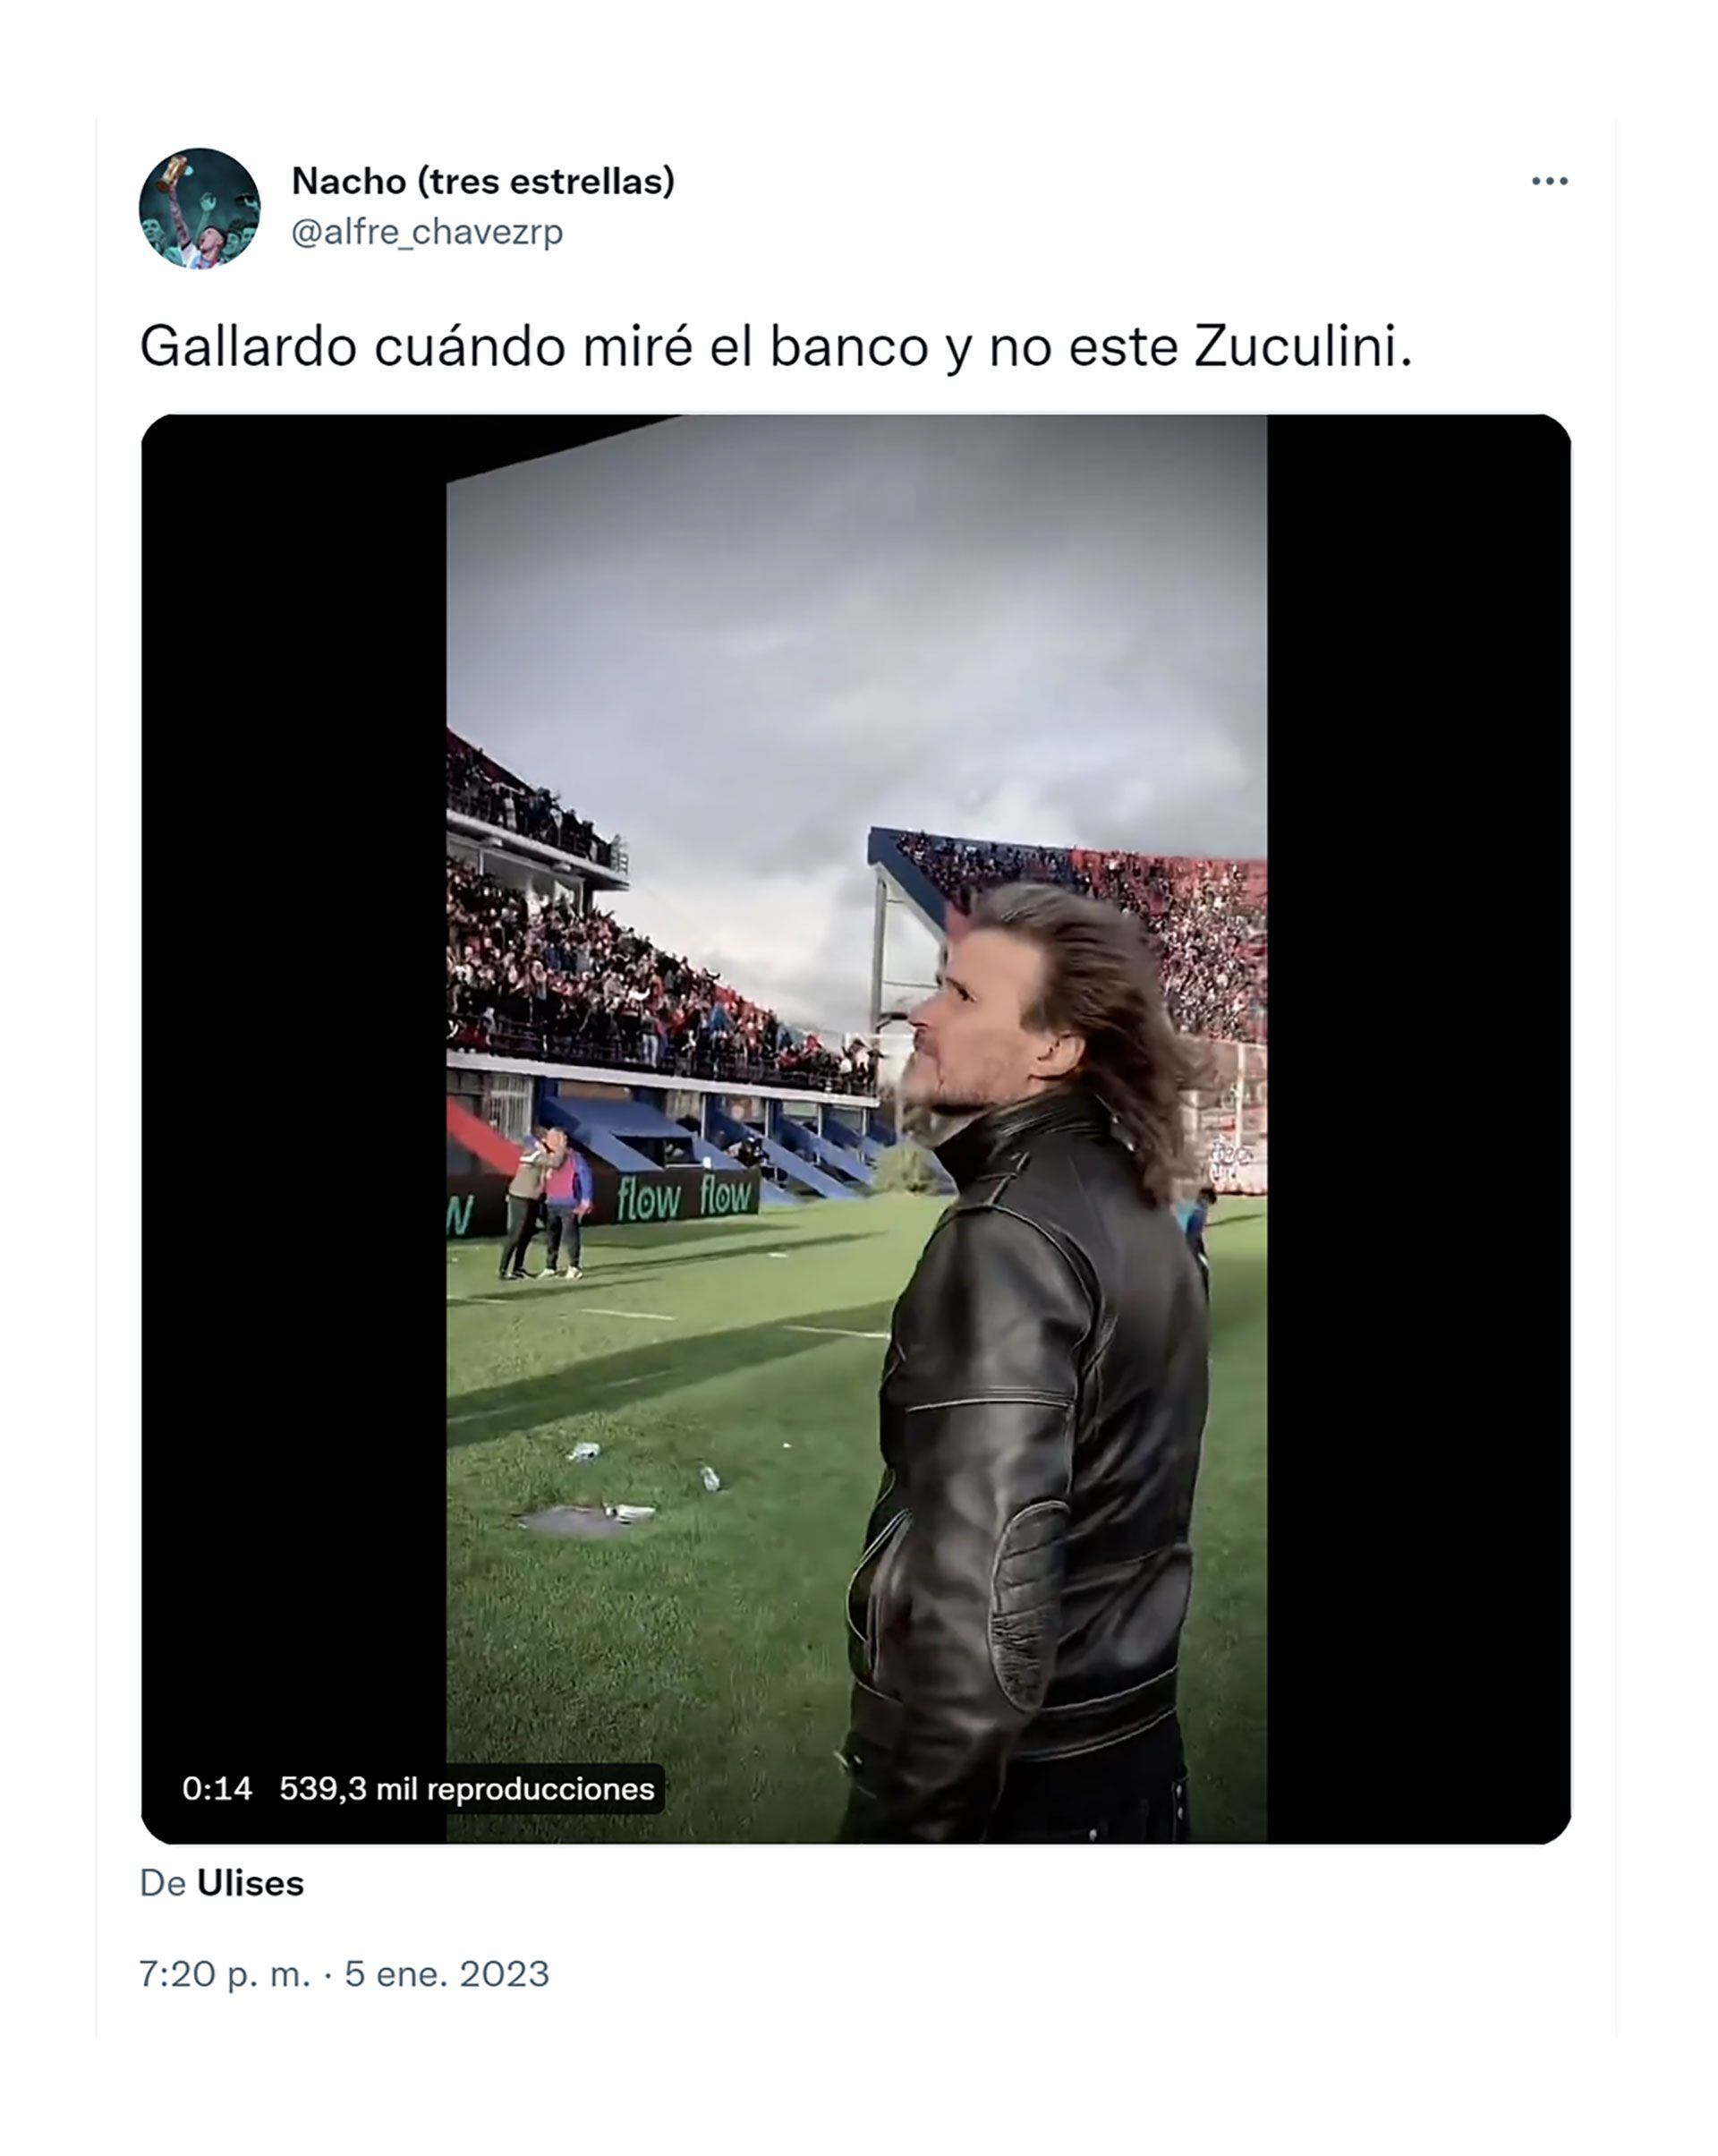 memes Gallardo dirigirá a Cristiano y Pity Martínez vs Messi